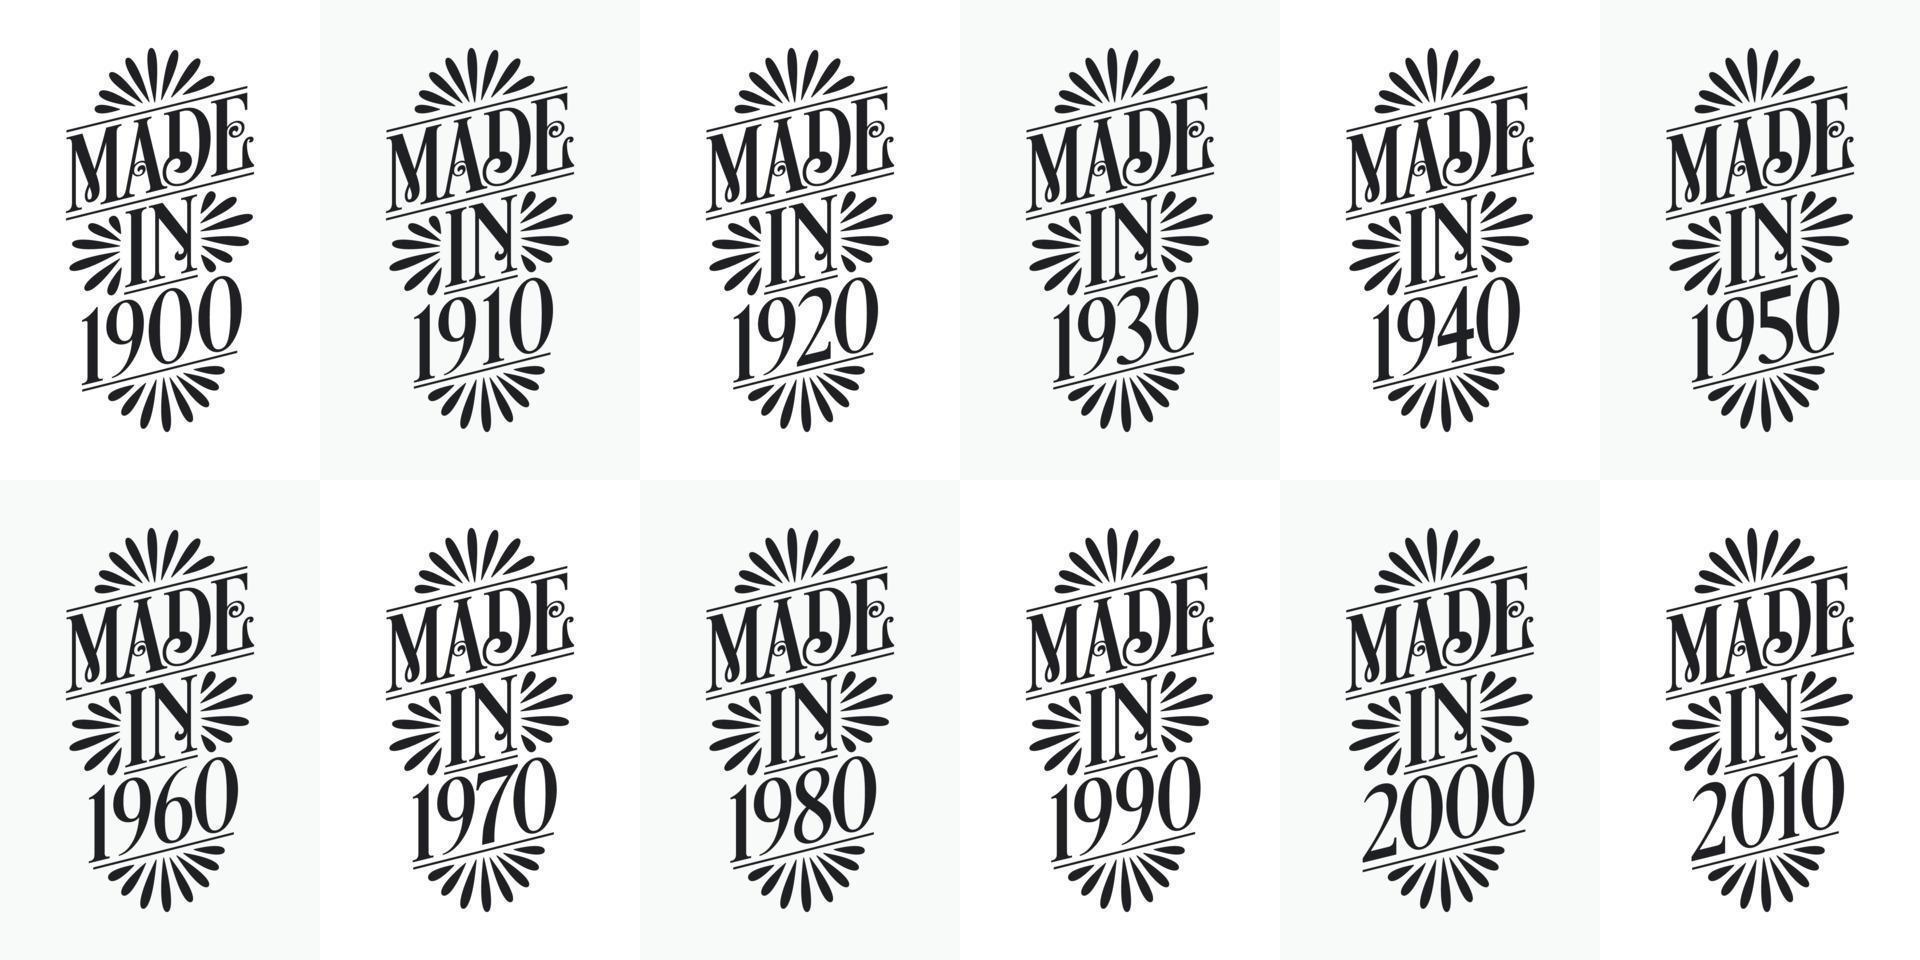 schönes typografisches geburtstagsdesignpaket. Hergestellt in den Jahren 1900, 1910, 1920, 1930, 1940, 1950, 1960, 1970, 1980, 1990, 2000, 2010 Vintage-T-Shirt-Paket vektor